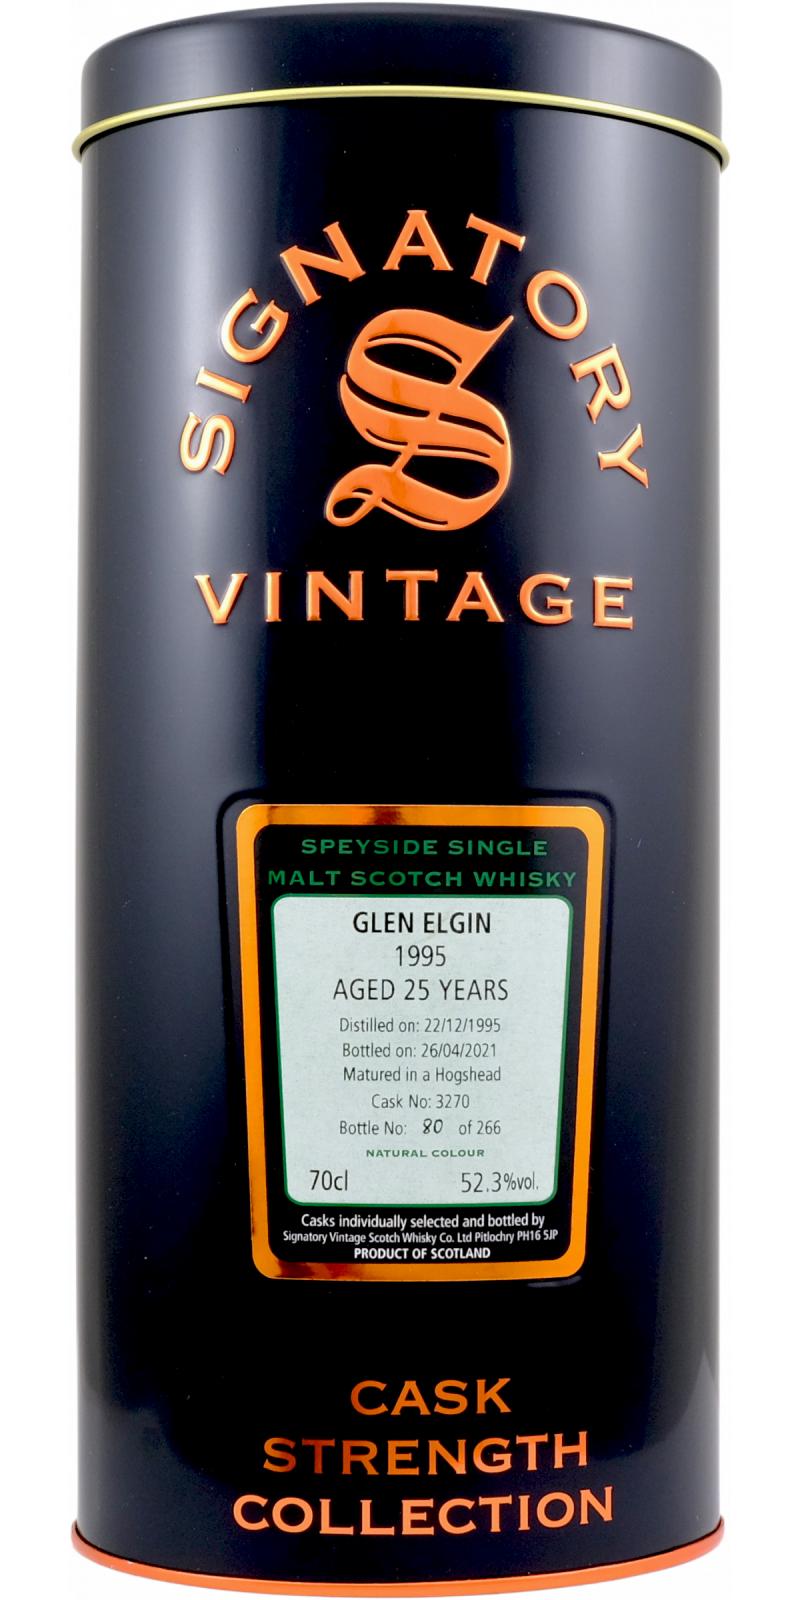 Glen Elgin 1995 SV